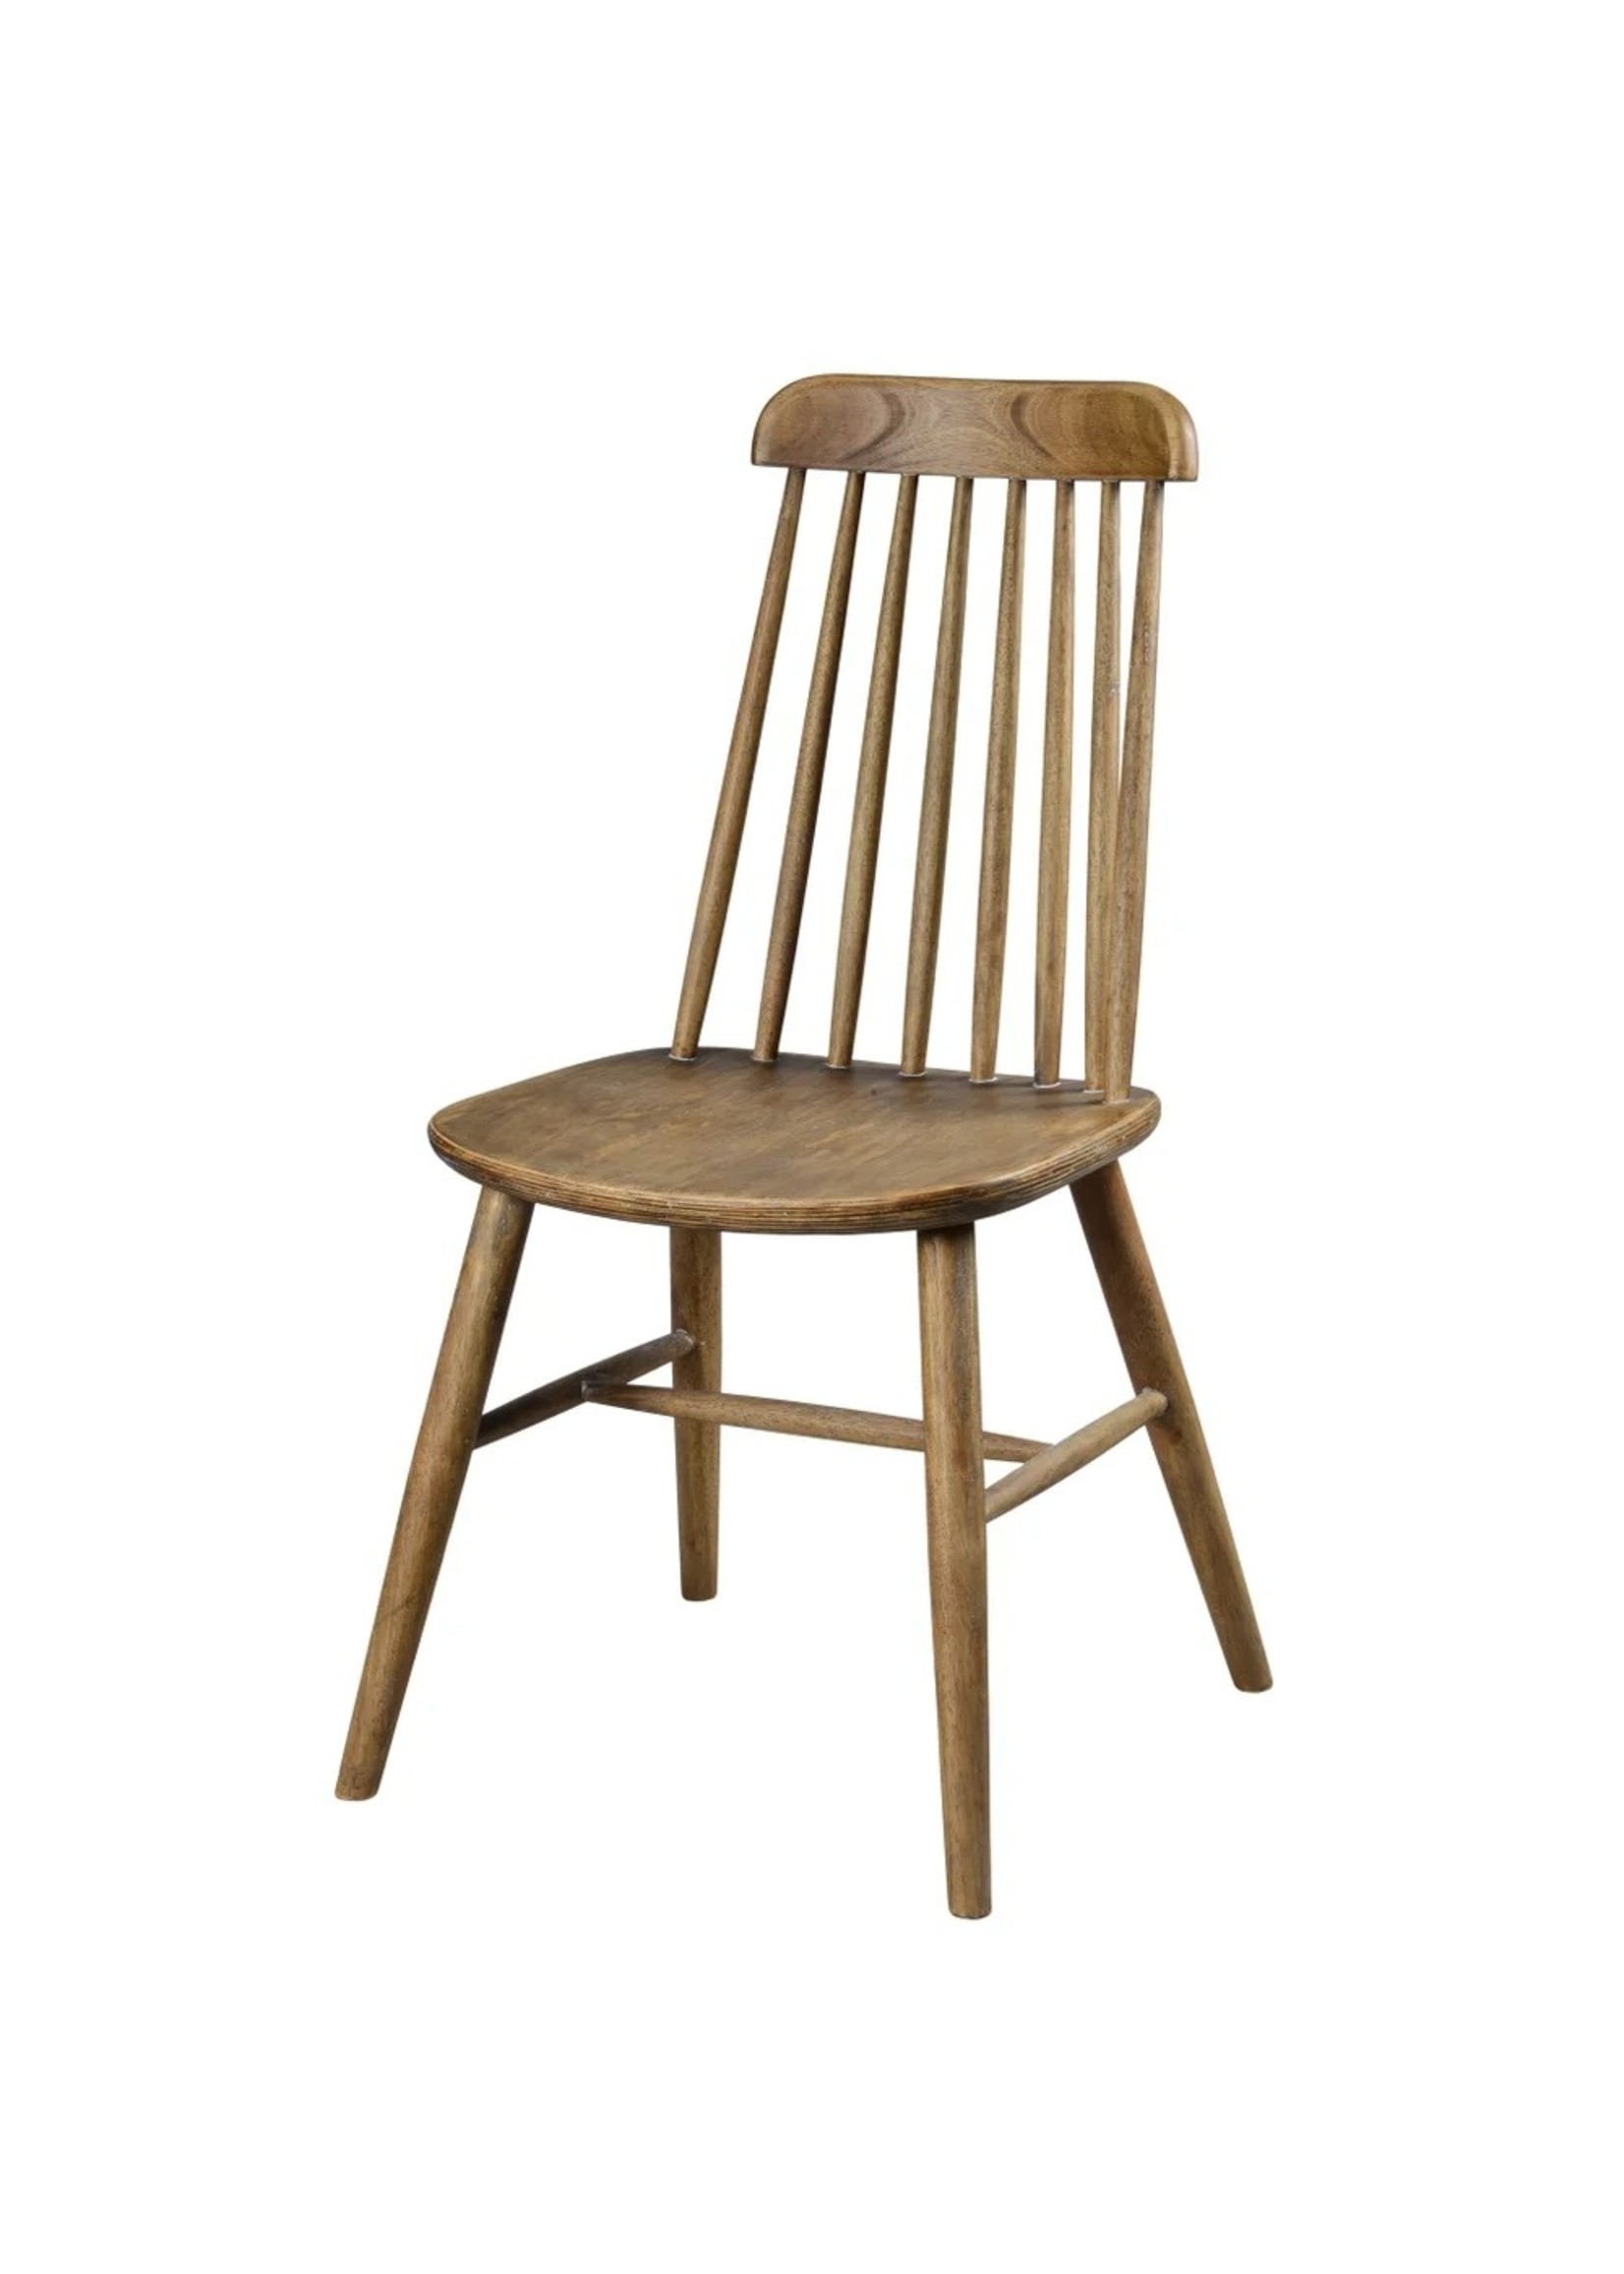 Forty West Lloyd Chair (Medium Brown Wash)